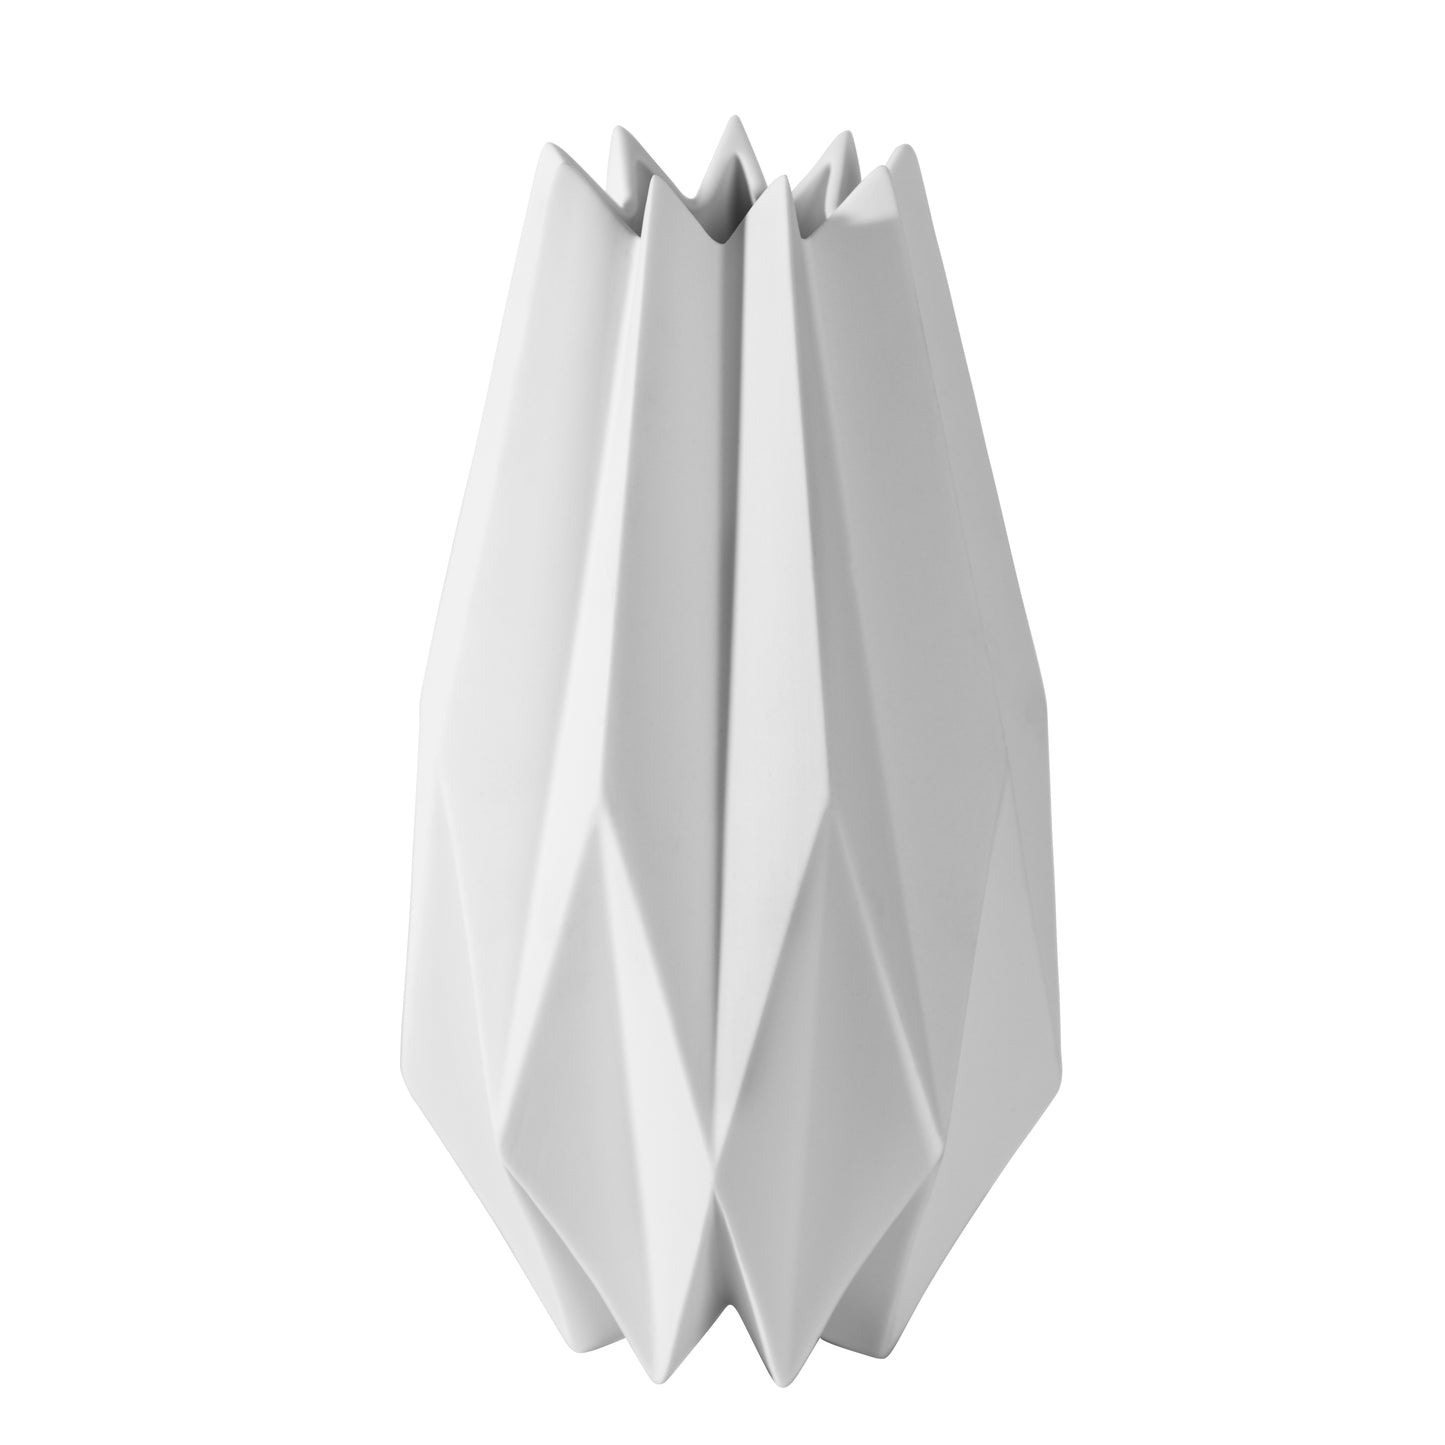 Geometric White Ceramic Flower Vase